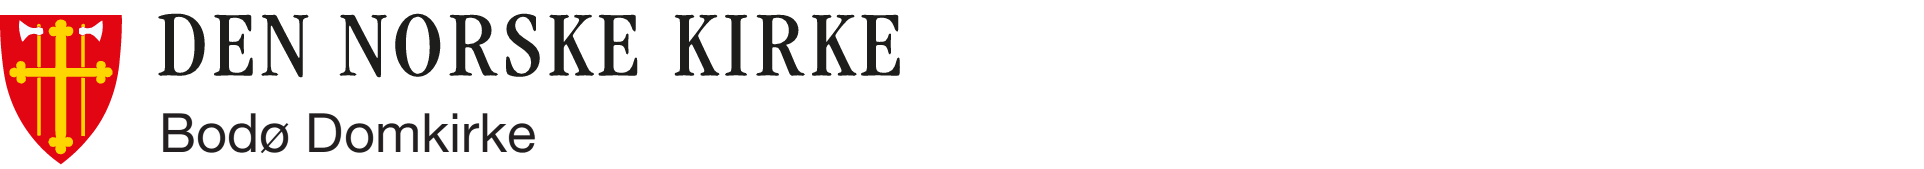 Bodø domkirke logo